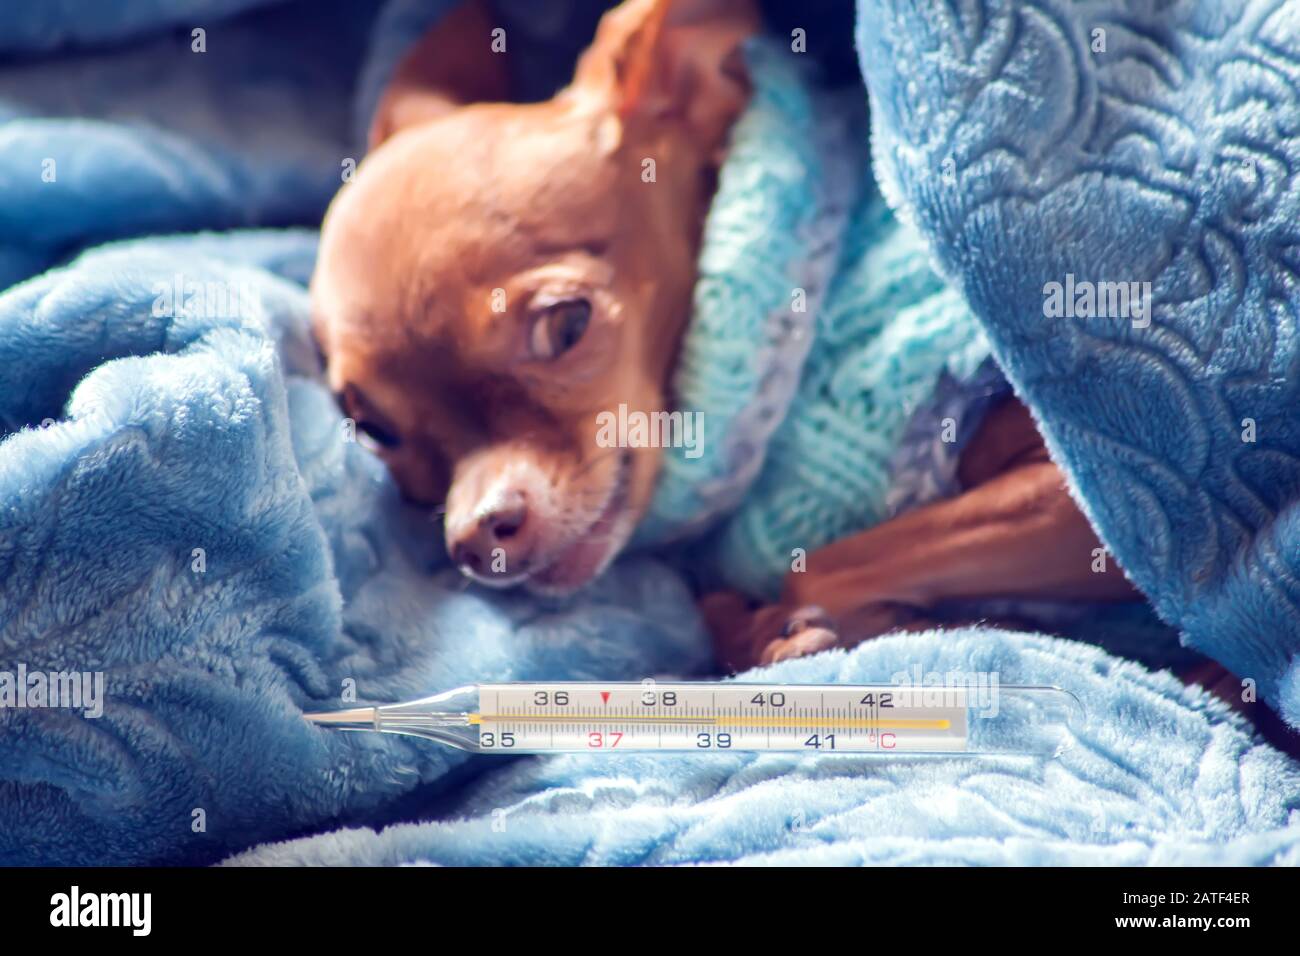 Der kleine Hund in blauem Pullover liegt auf einem Bett, das in einer Decke mit einem Thermometer daneben eingewickelt ist. Konzept für Gesundheit und Krankheit von Haustieren Stockfoto